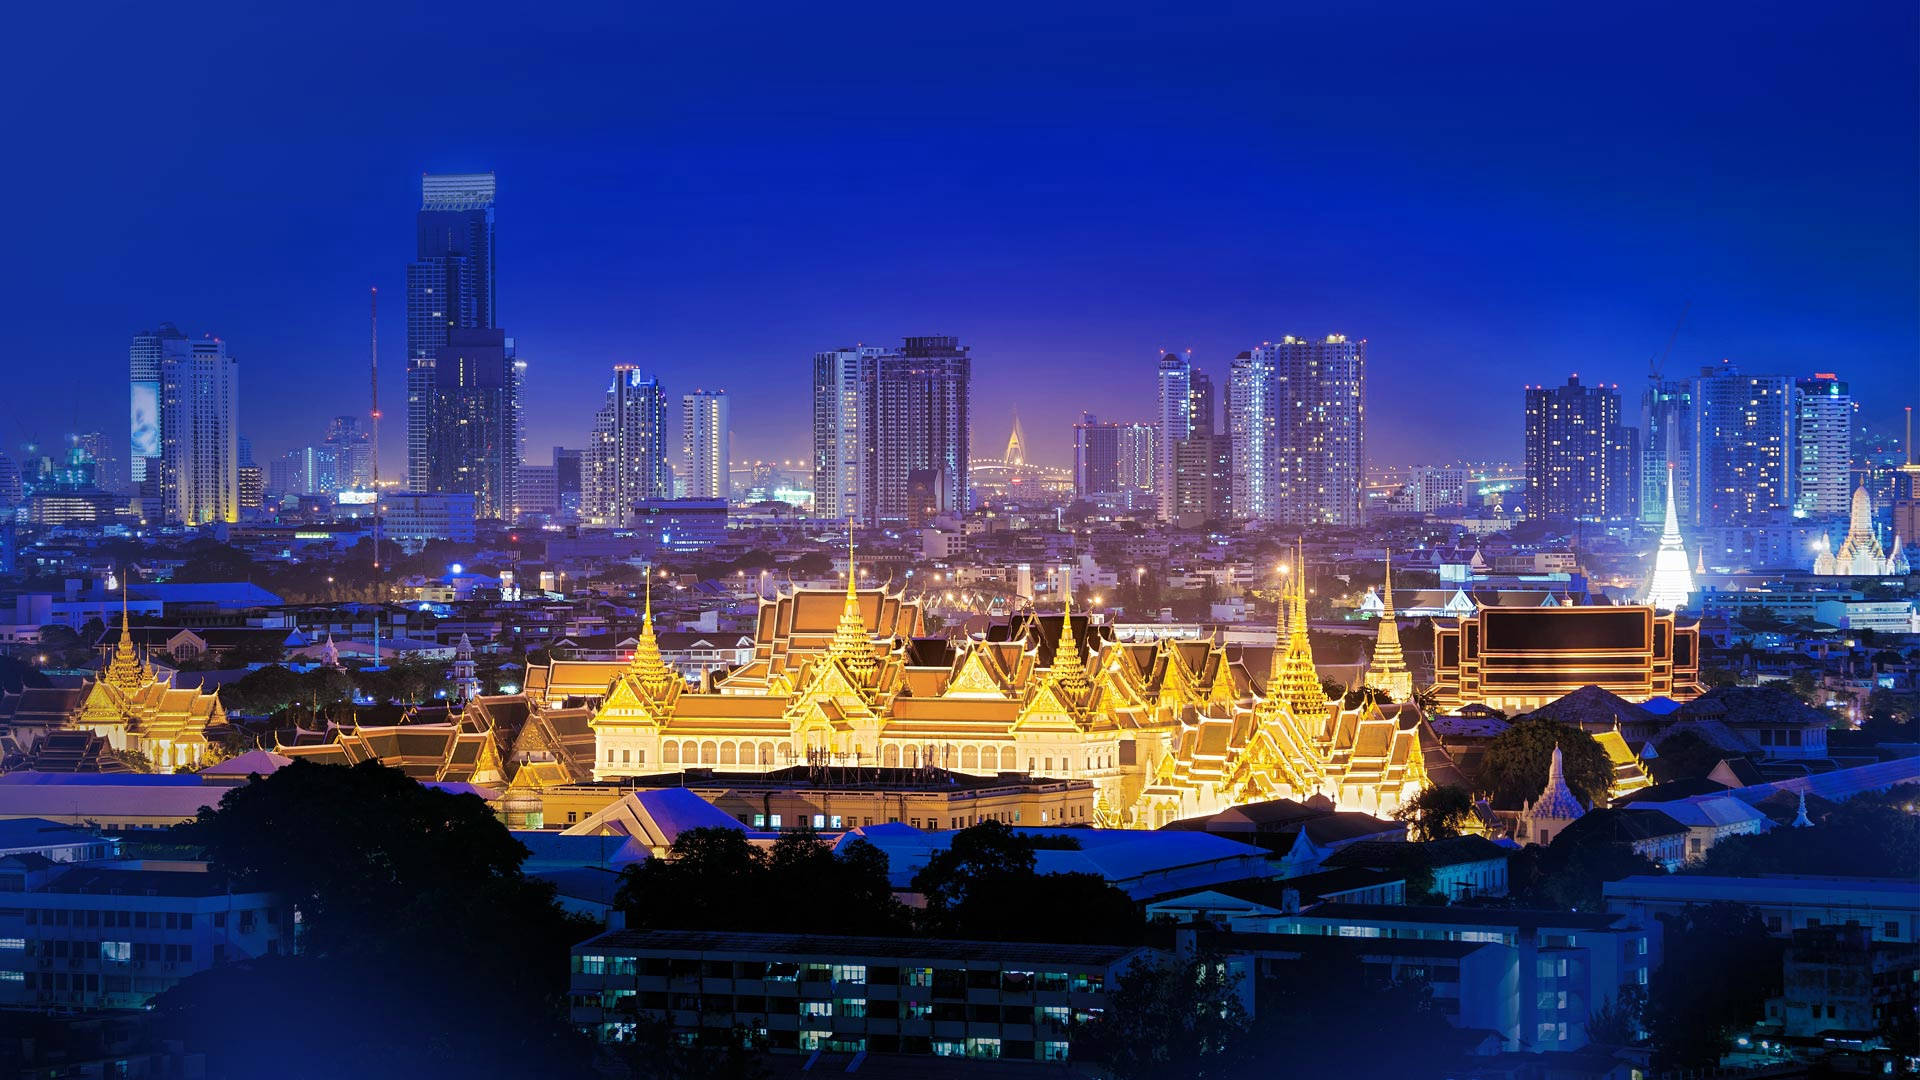 Det store Palads af Thailand vises i dette tapet. Wallpaper